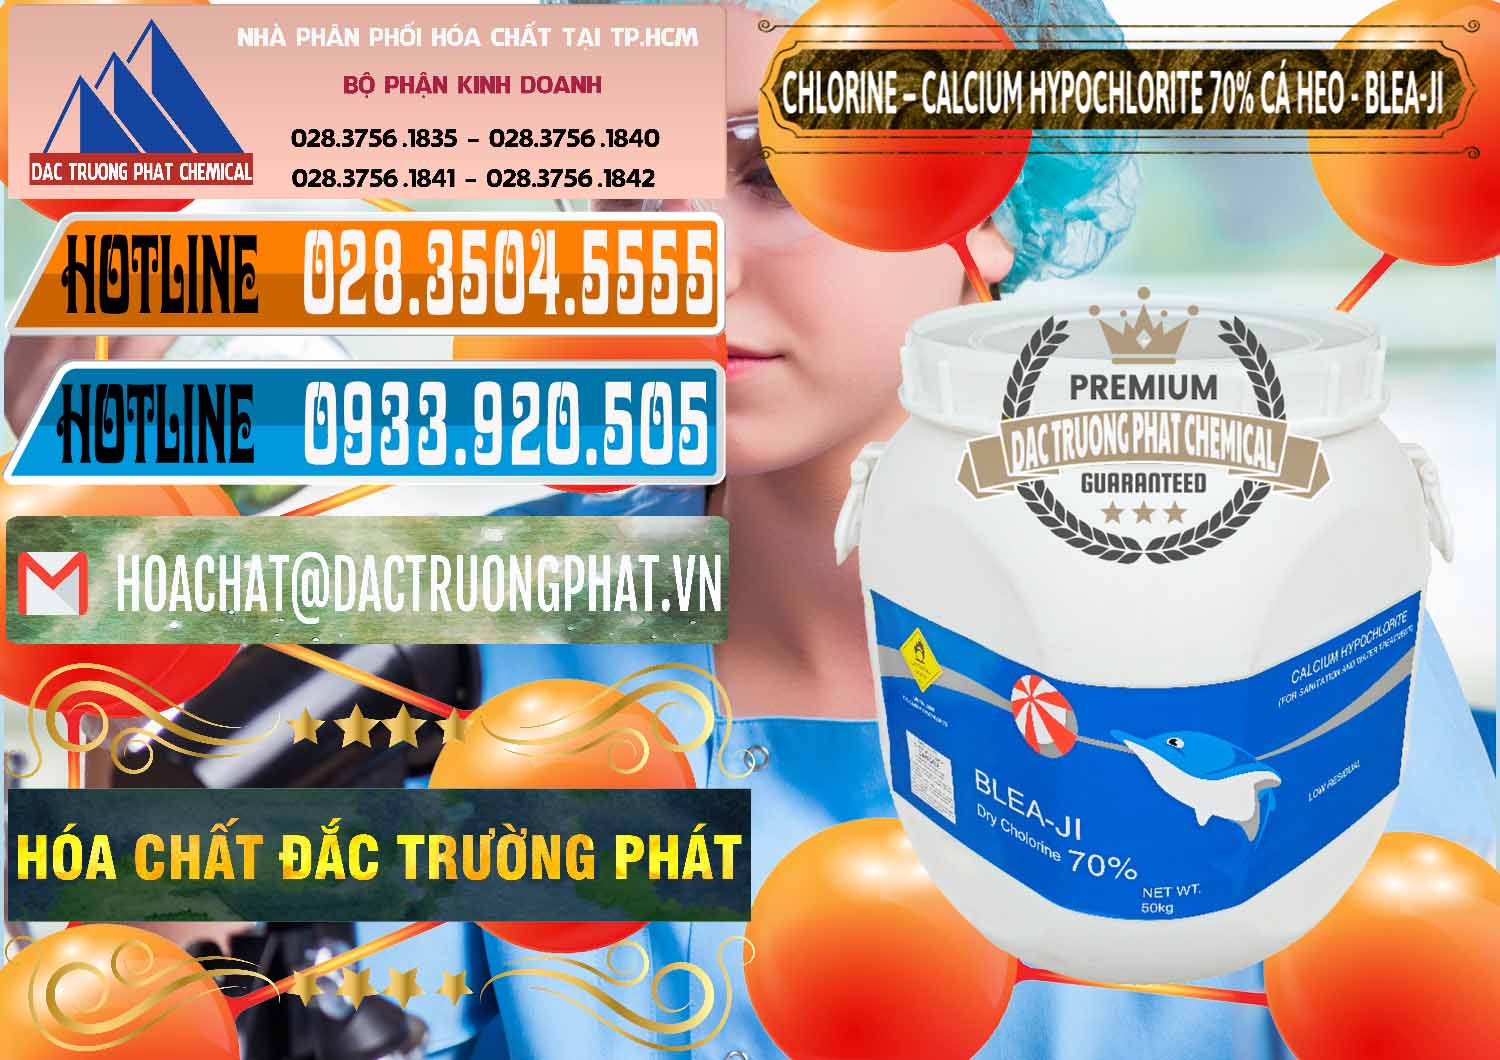 Chuyên bán - cung cấp Clorin - Chlorine Cá Heo 70% Blea-Ji Trung Quốc China - 0056 - Công ty chuyên phân phối - bán hóa chất tại TP.HCM - stmp.net